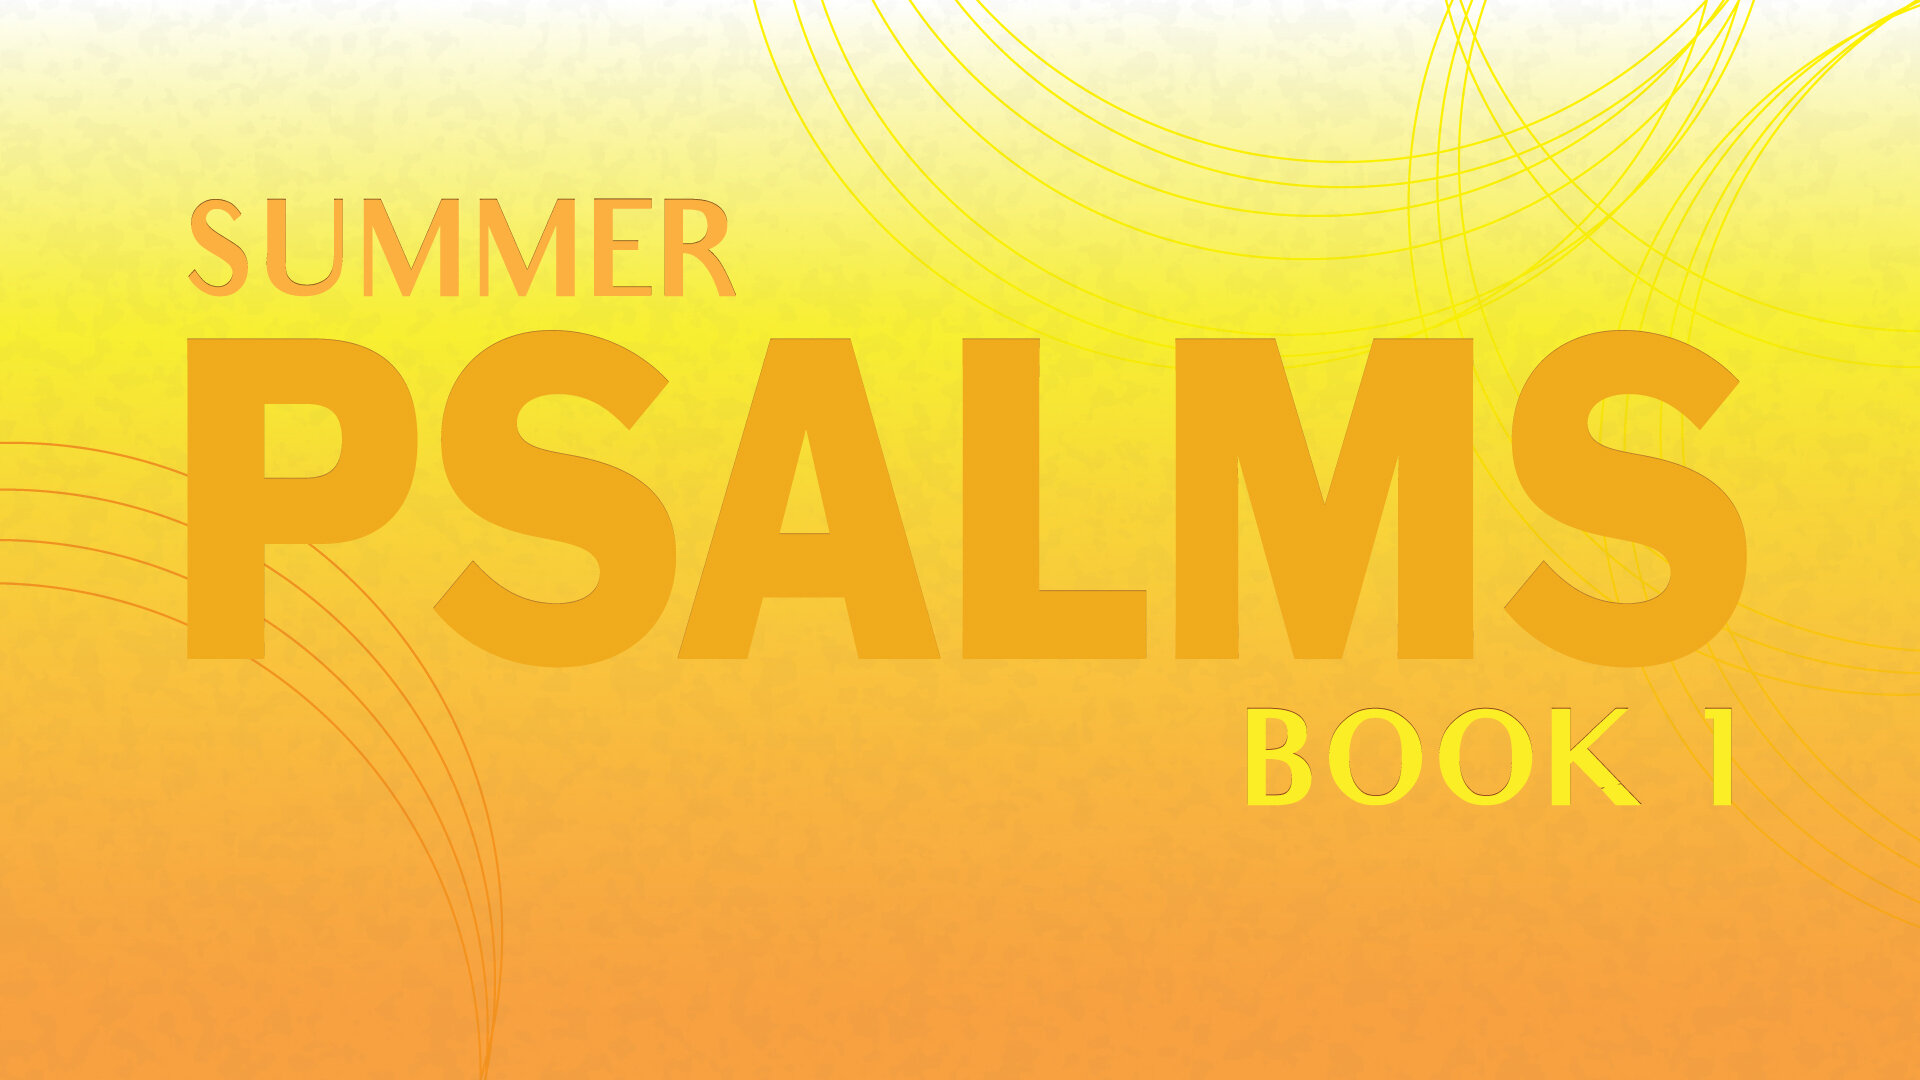 Message Series: Summer Psalms: Book 1